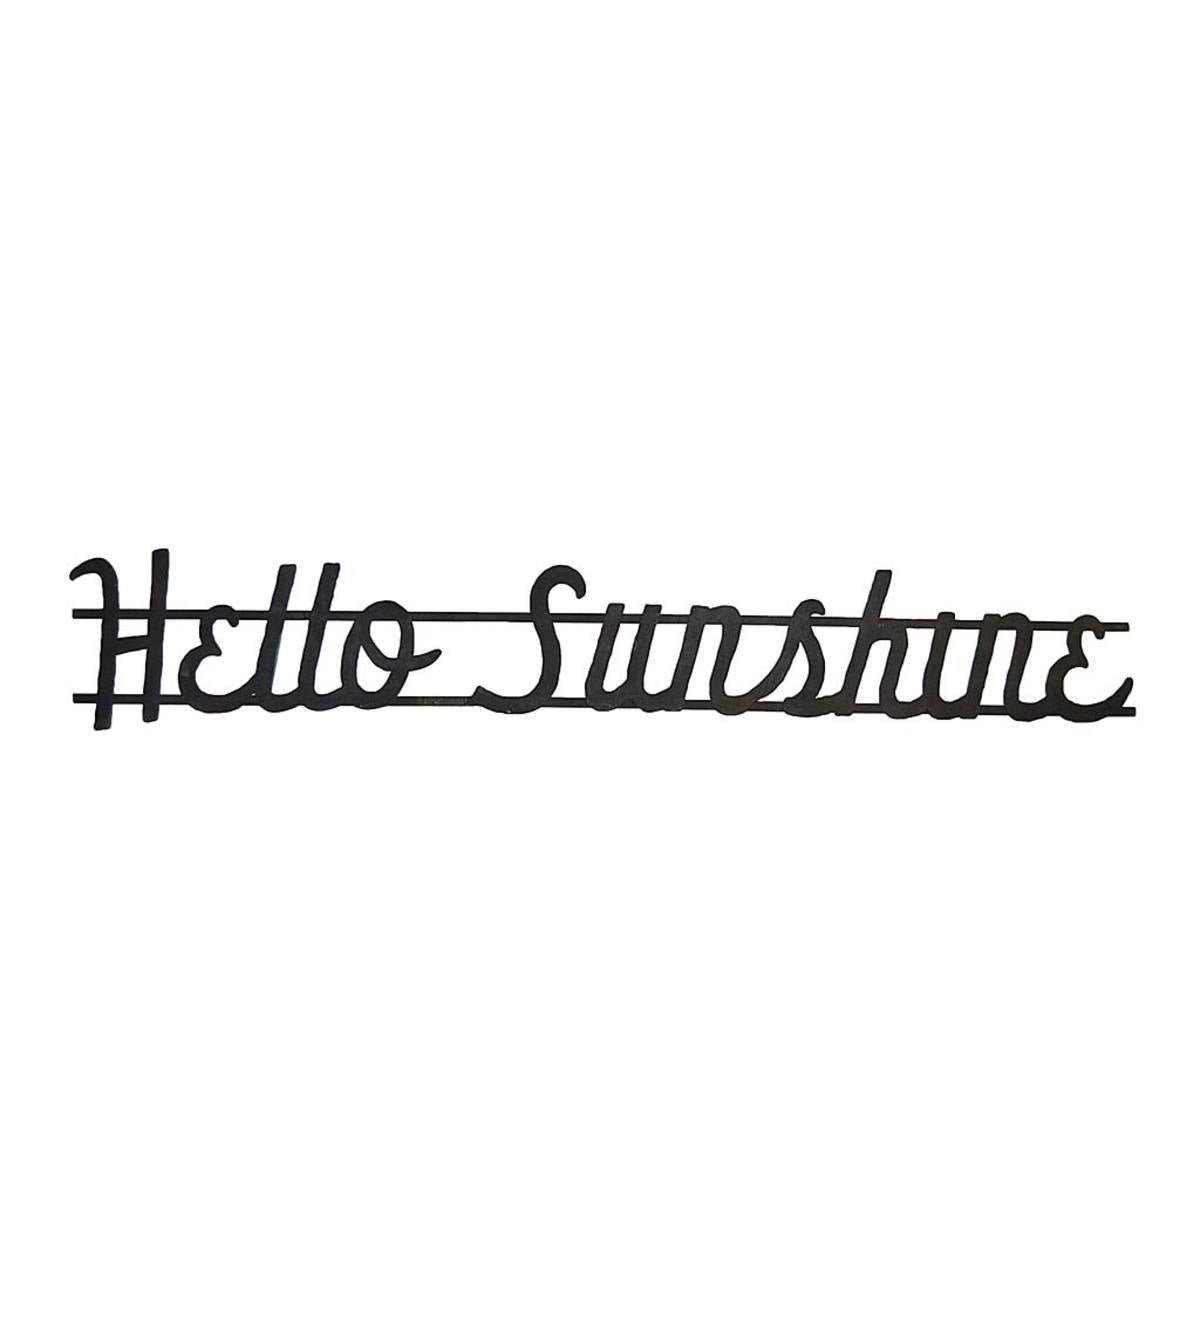 Hello Sunshine Metal Wall Sign